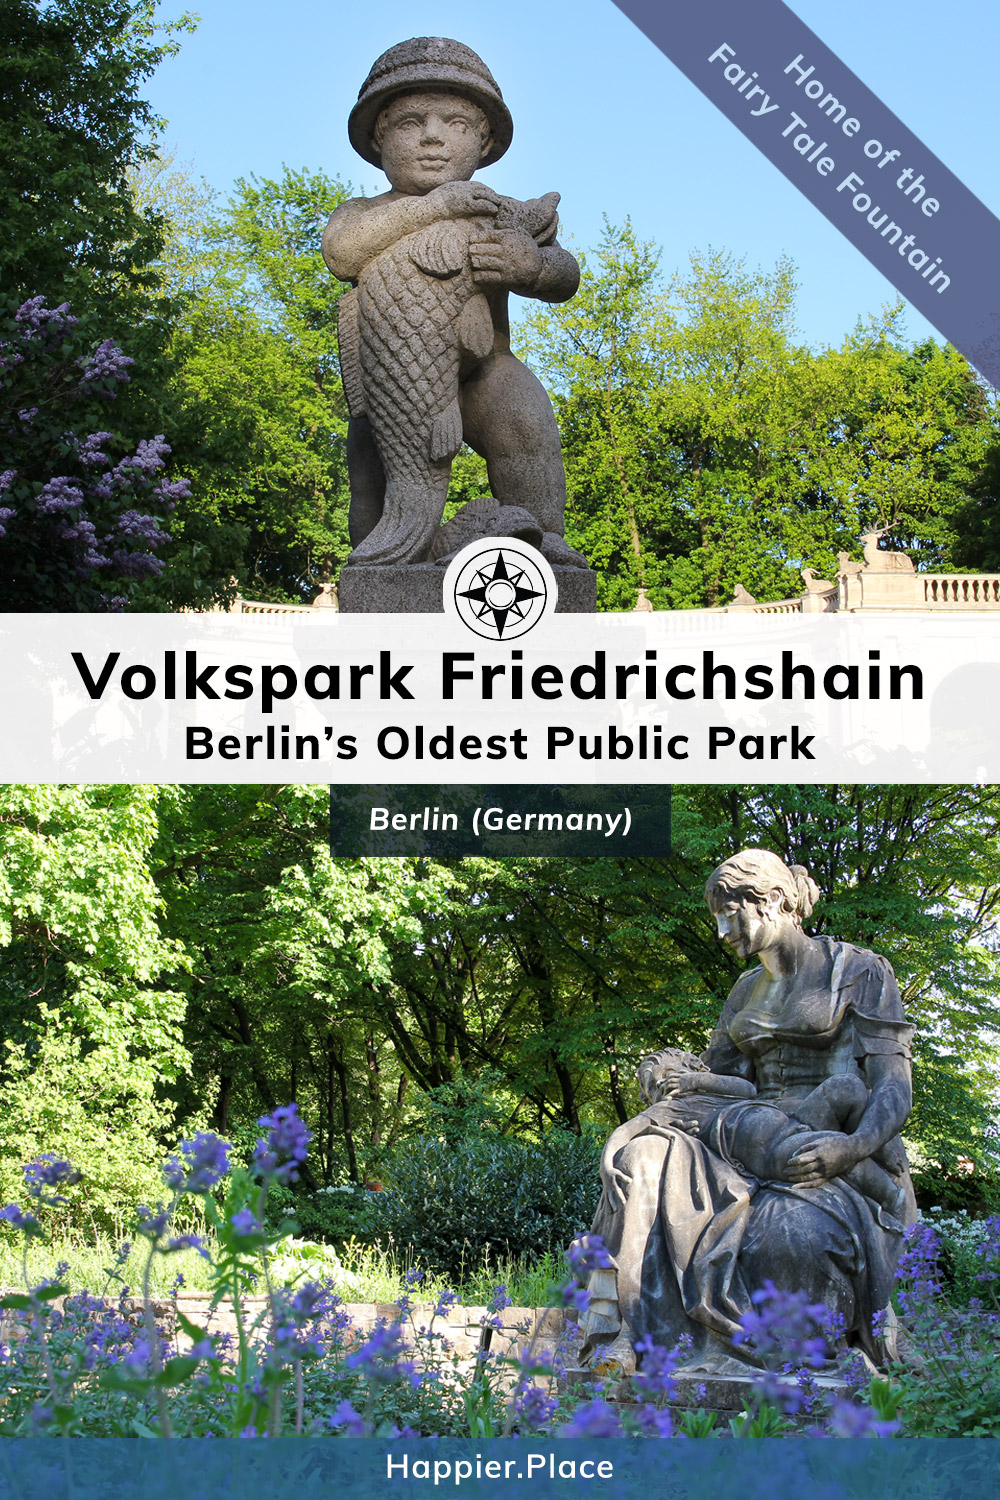 Berlins Oldest Park, Volkspark Friedrichshain, statues, purple flowers, Maerchenbrunnen